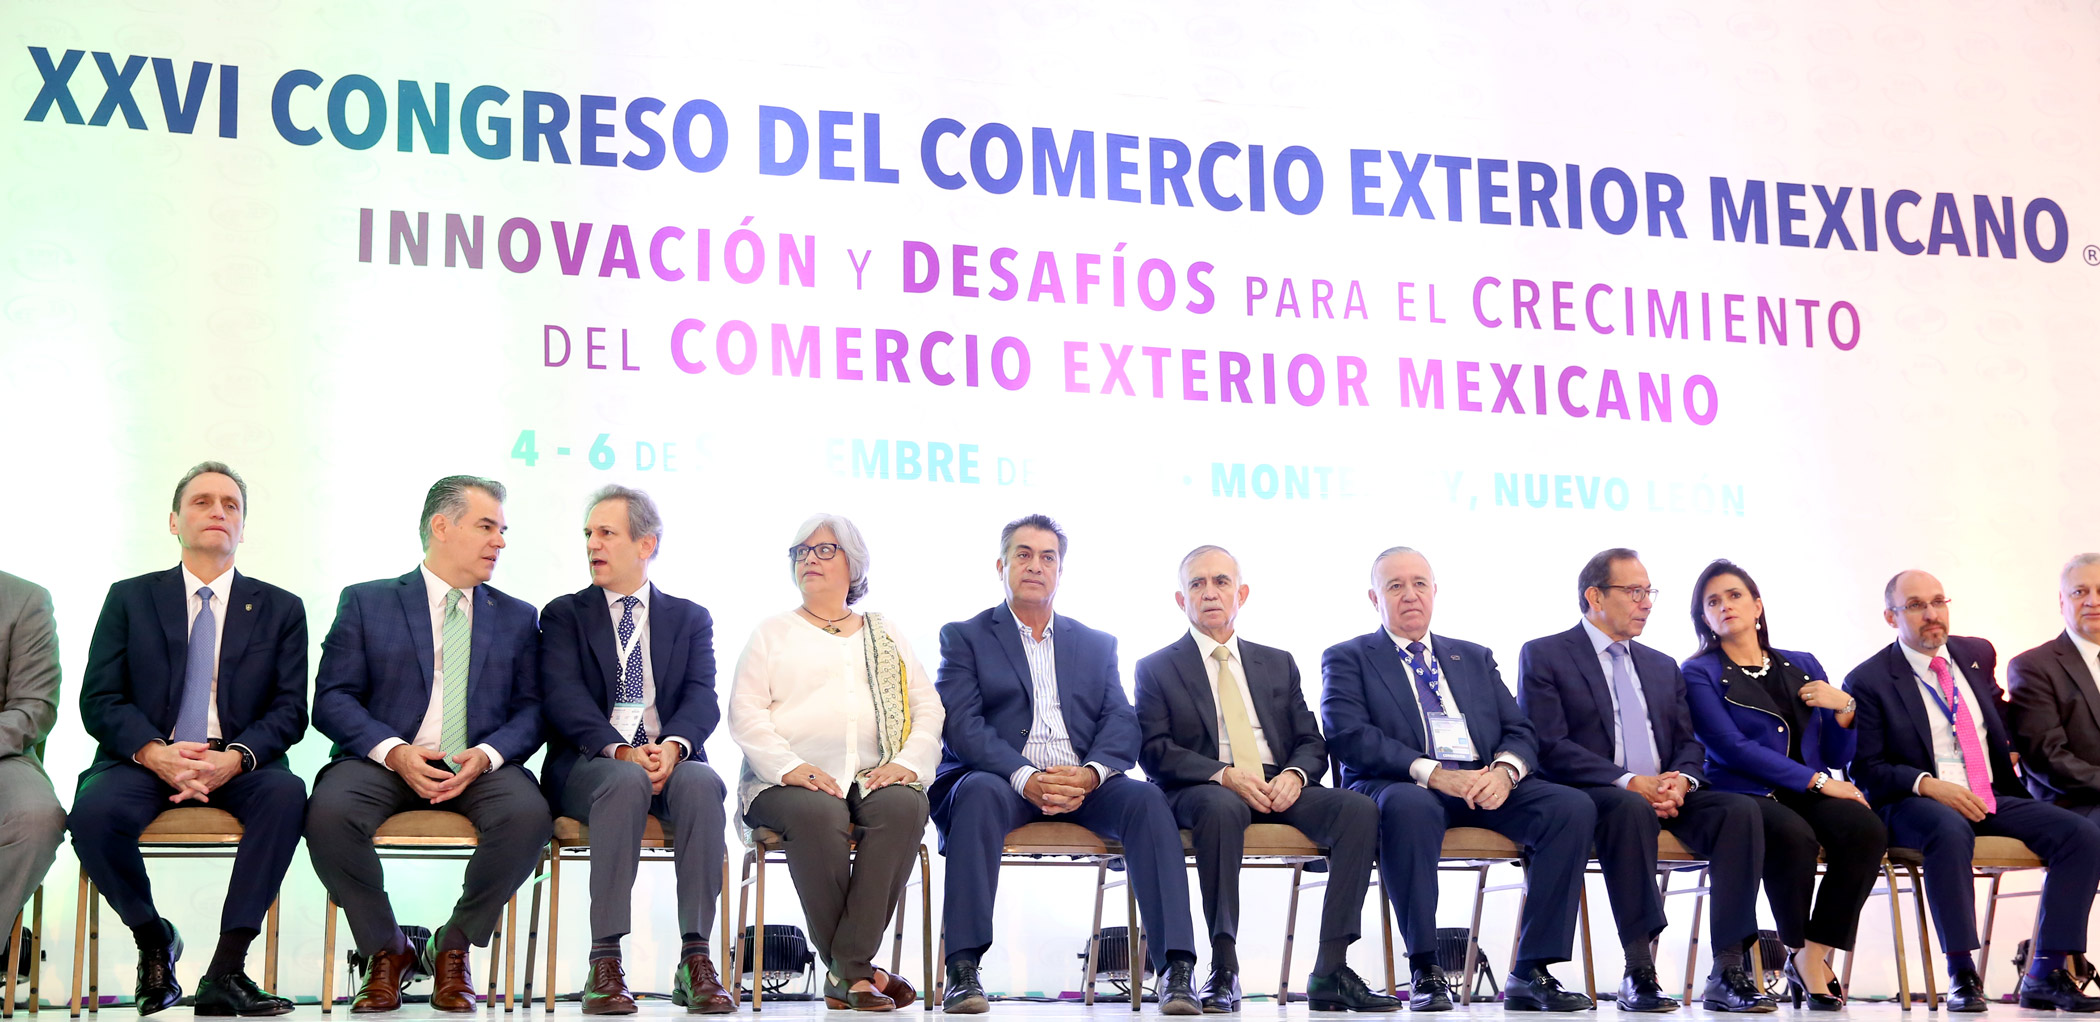 La Secretaria de Economía Participa en el XXVI Congreso del Comercio Exterior Mexicano y Entrega del Premio Nacional de Exportación